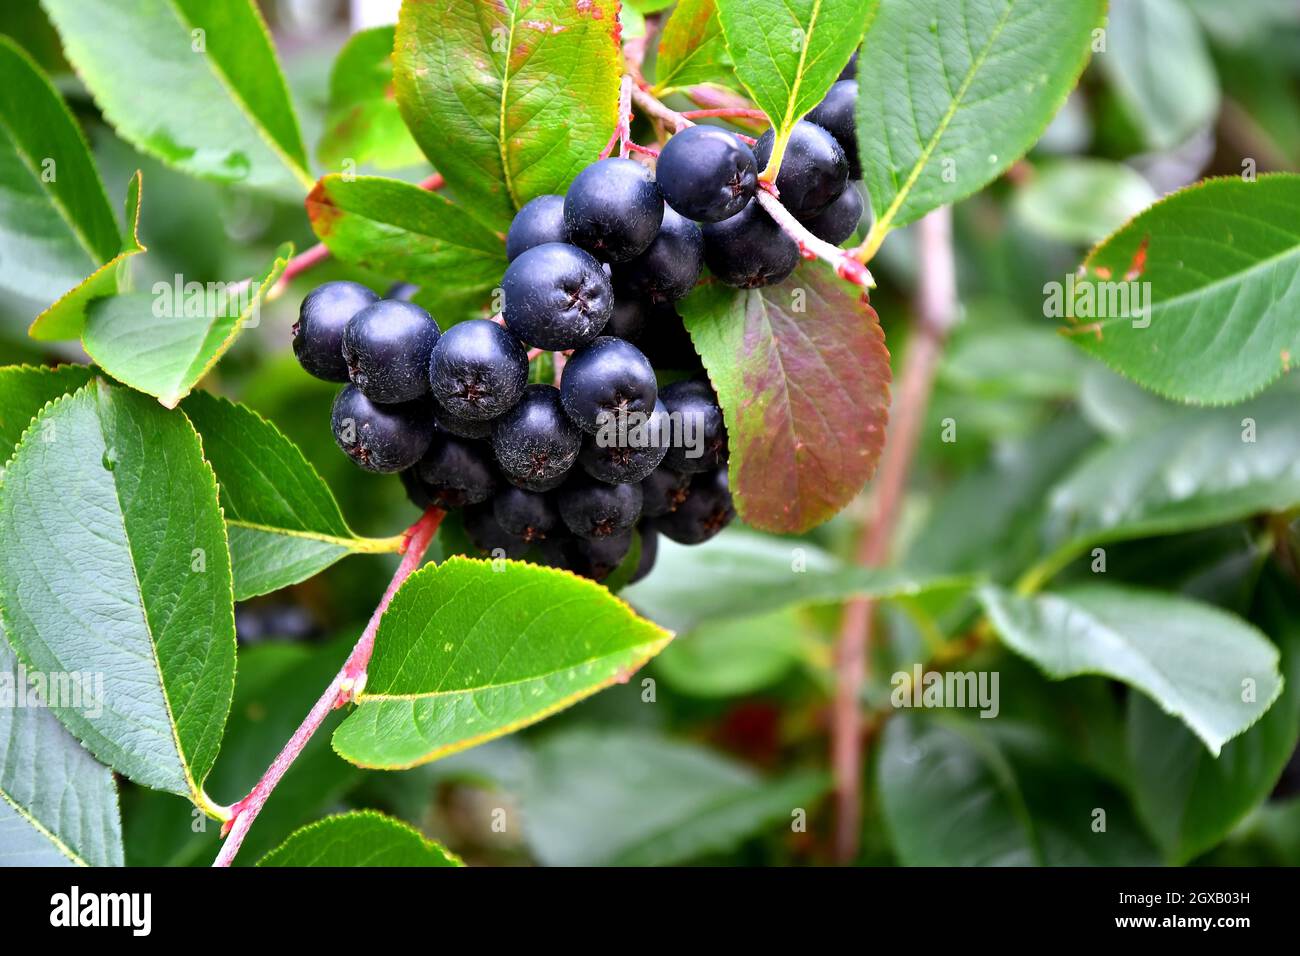 Reife Aronia-Beeren auf einem Baum in Deutschland Stockfotografie - Alamy